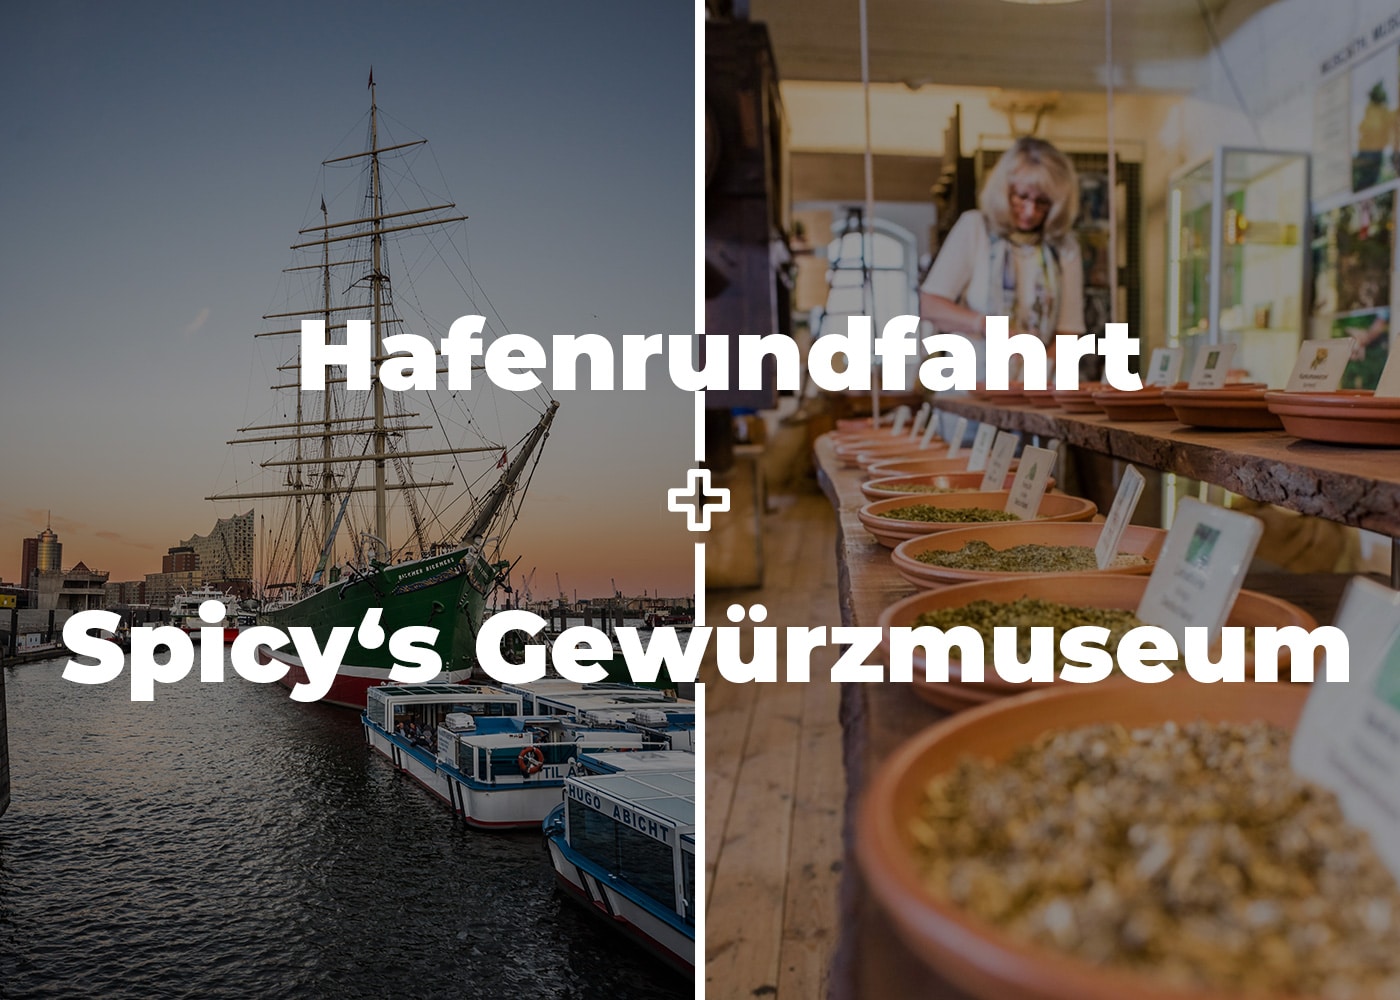 Kombiangebot Hafenrundfahrt und Spicys Gewürzmuseum